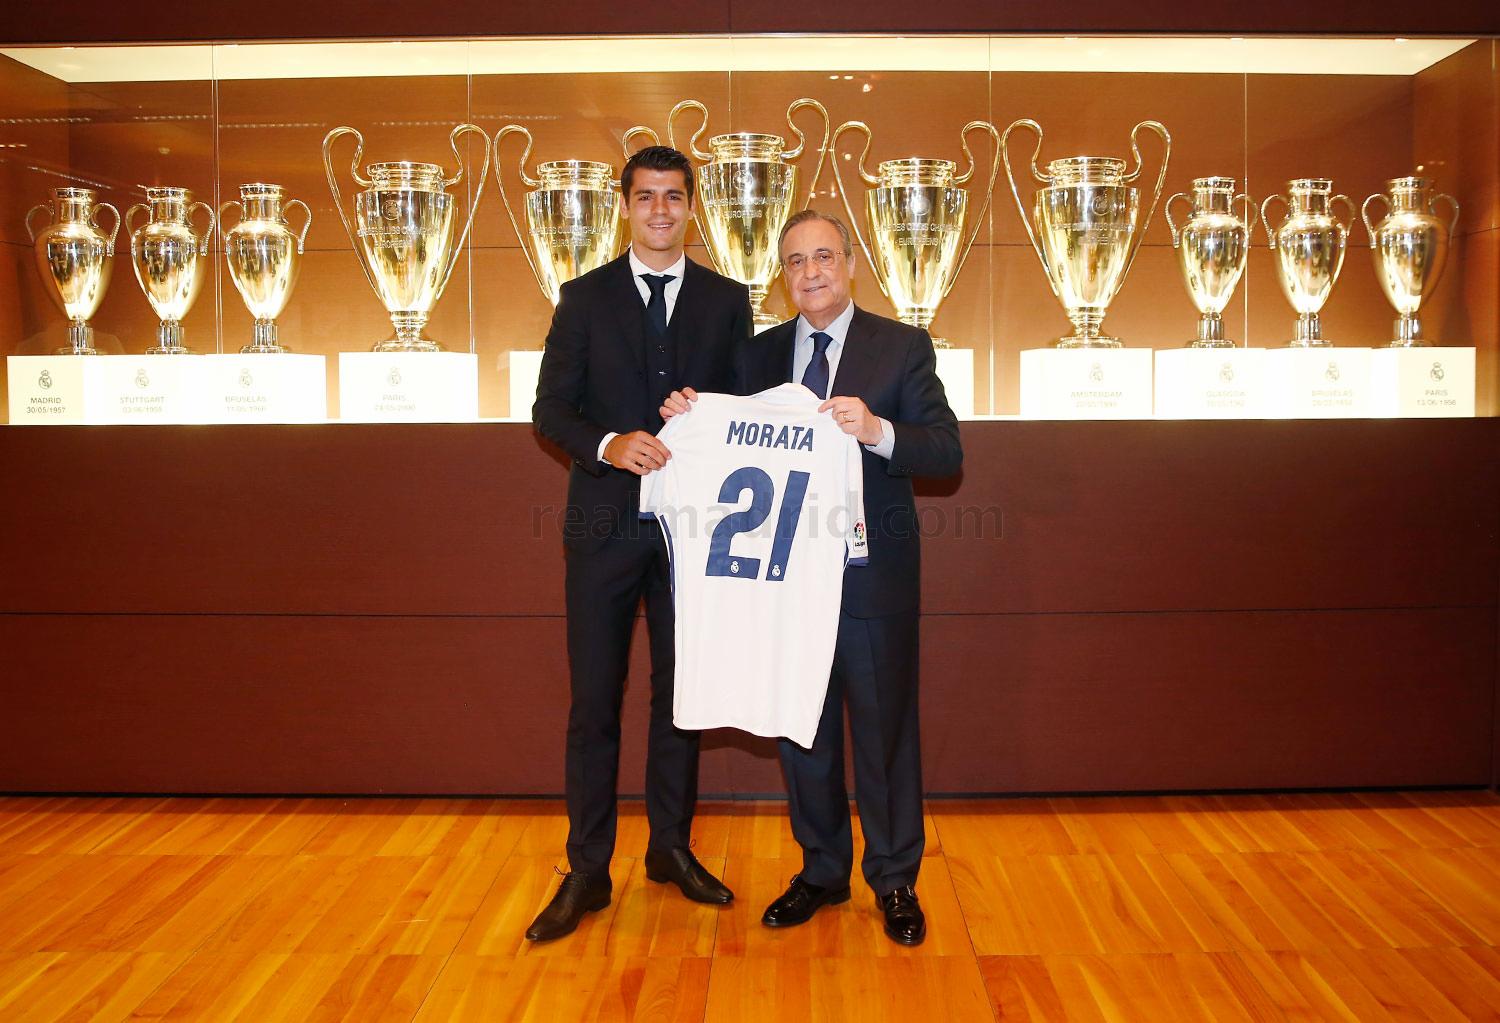 Morata posa junto a Florentino Pérez y la camiseta madridista